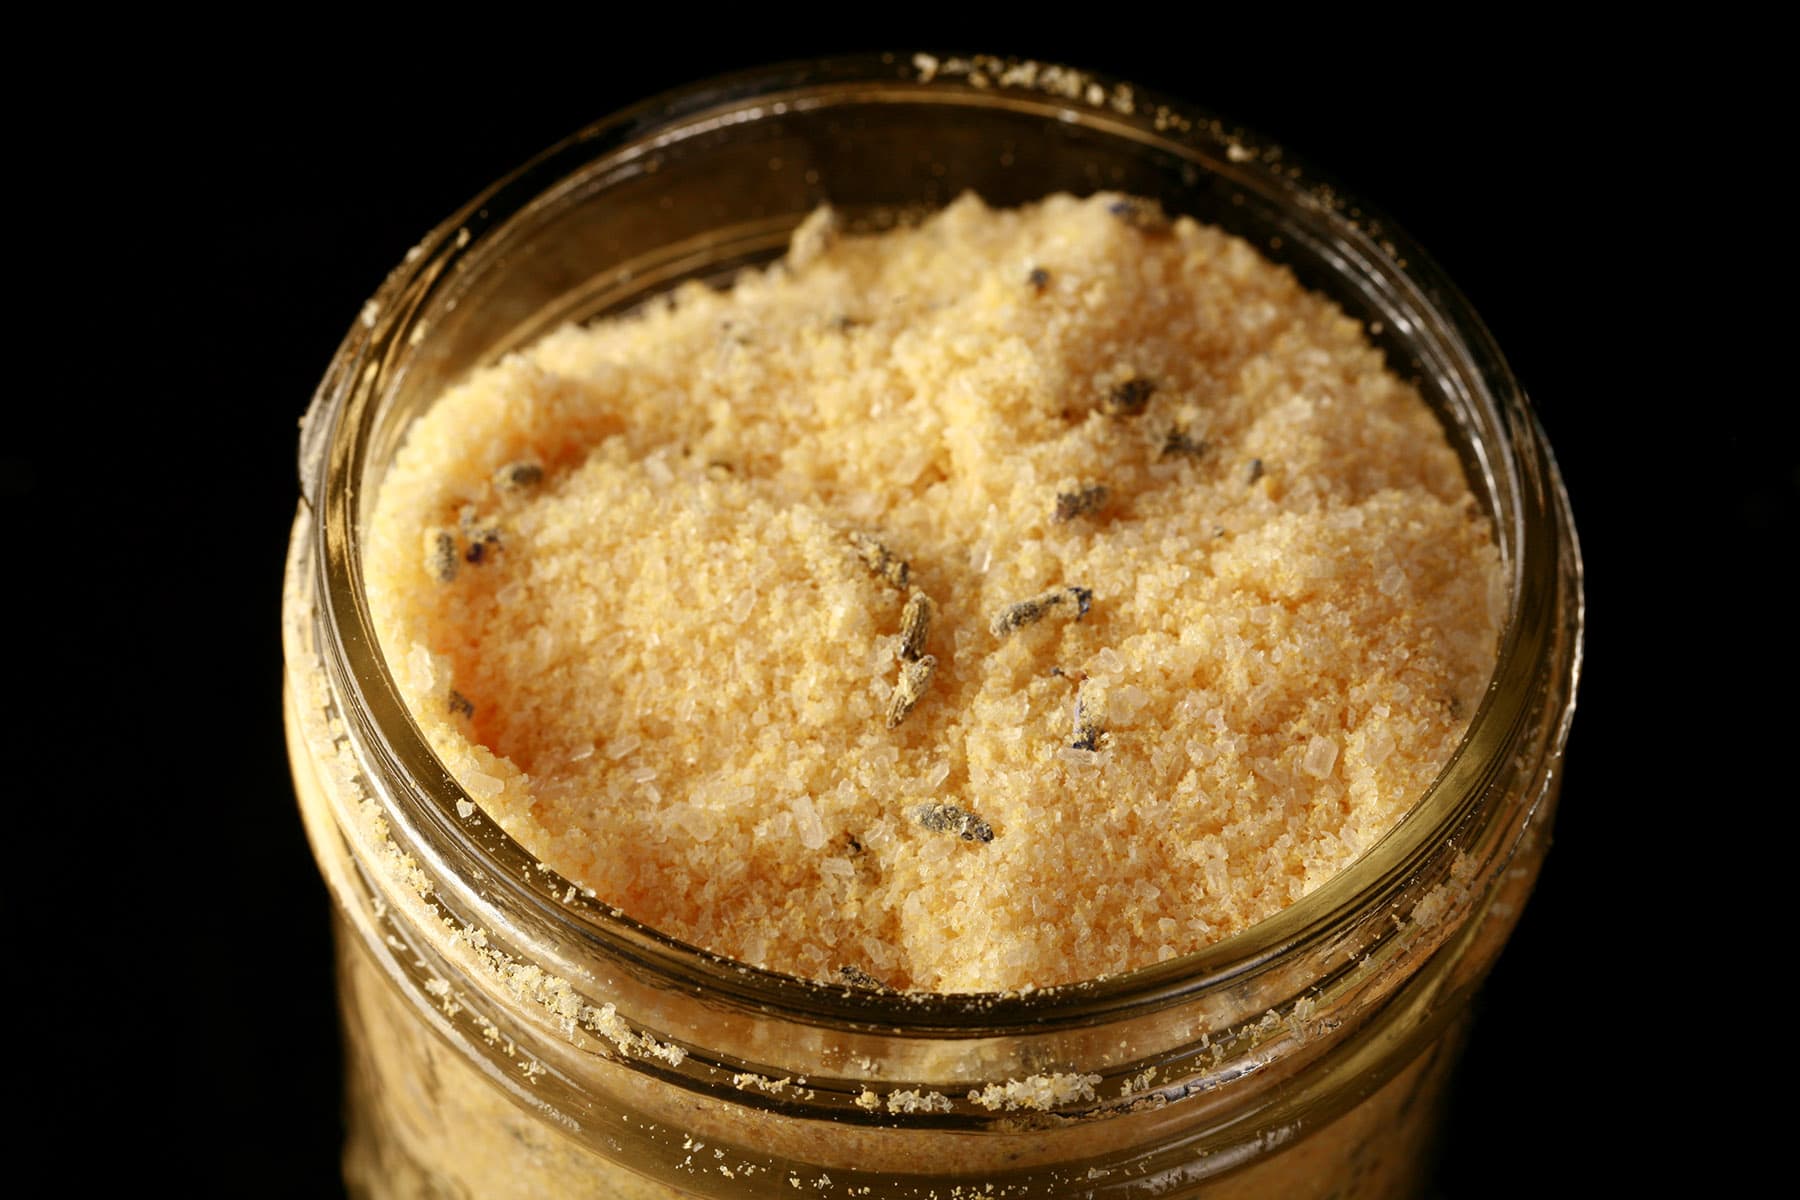 A mason jar of homemade mustard bath.